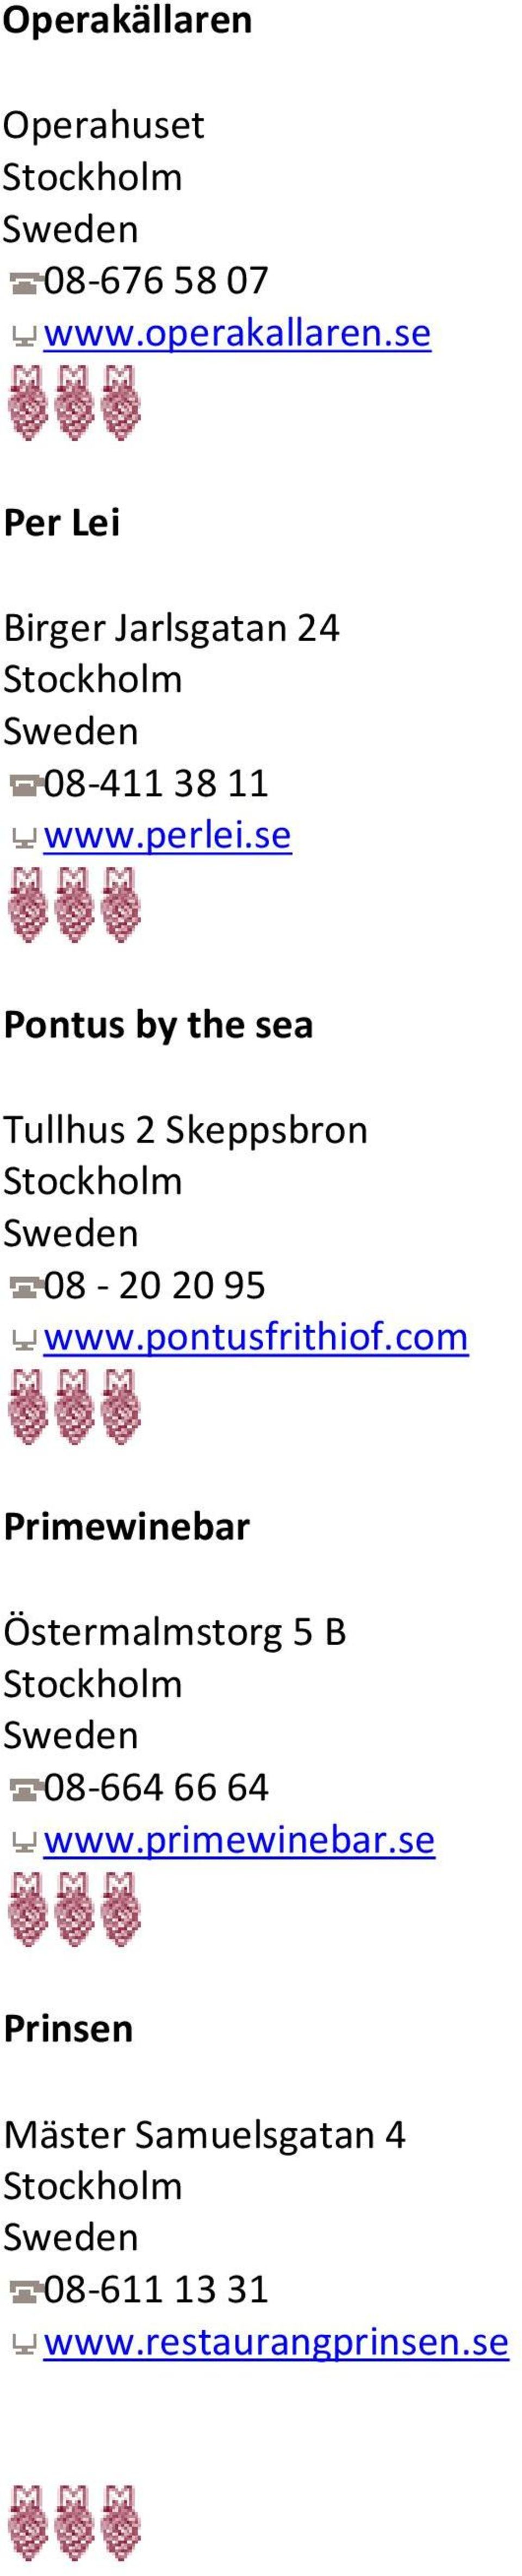 se Pontus by the sea Tullhus 2 Skeppsbron 08-20 20 95 www.pontusfrithiof.